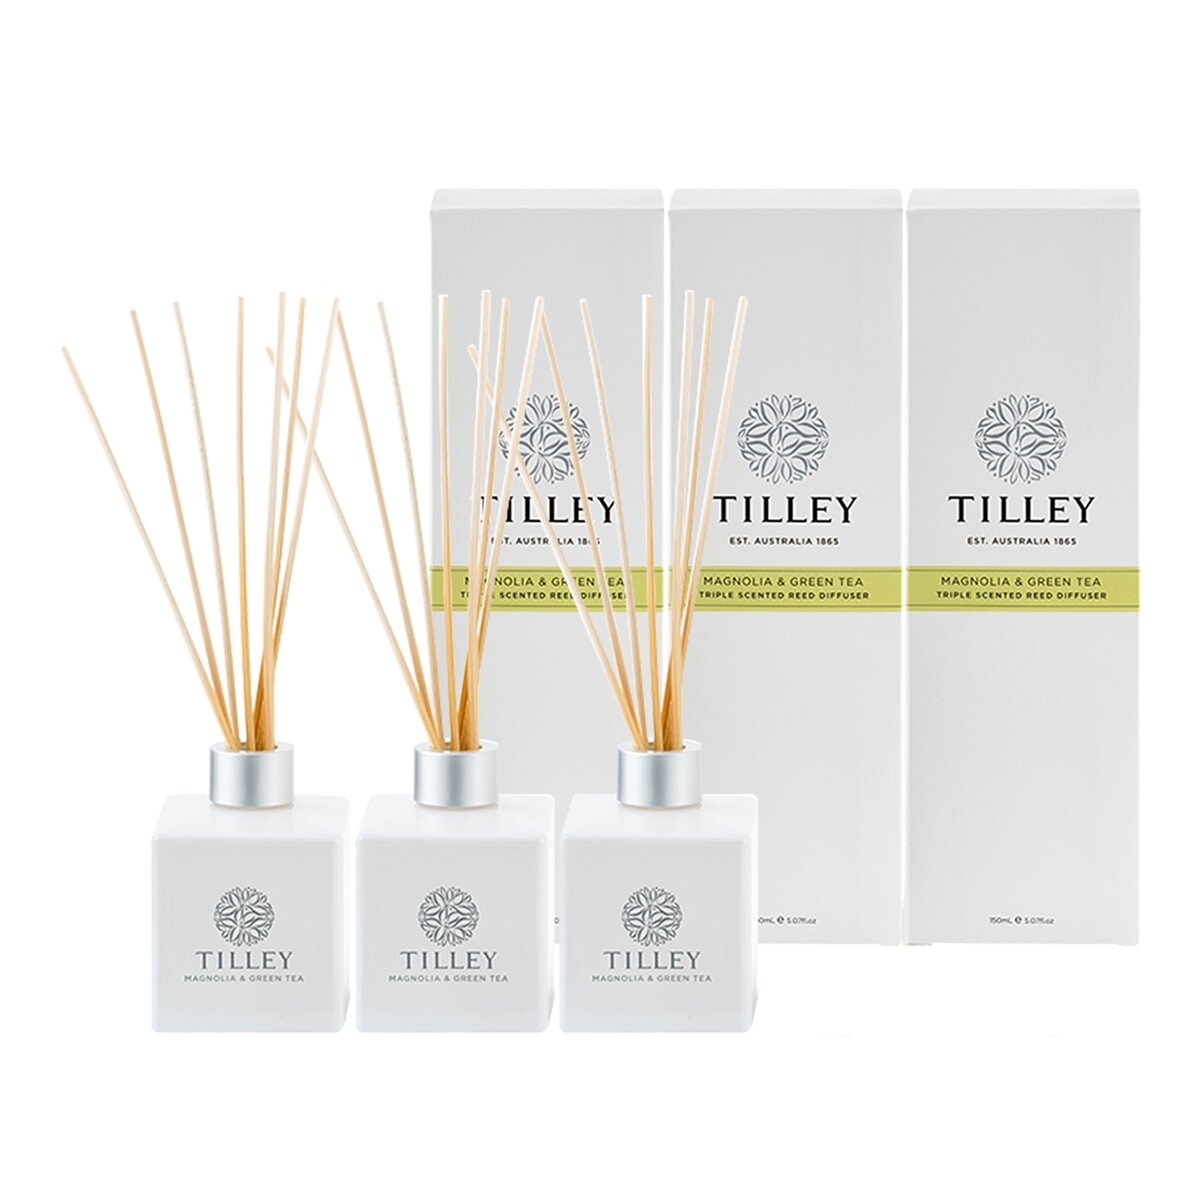 Tilley 澳洲經典香氛擴香組 150毫升 X 3入